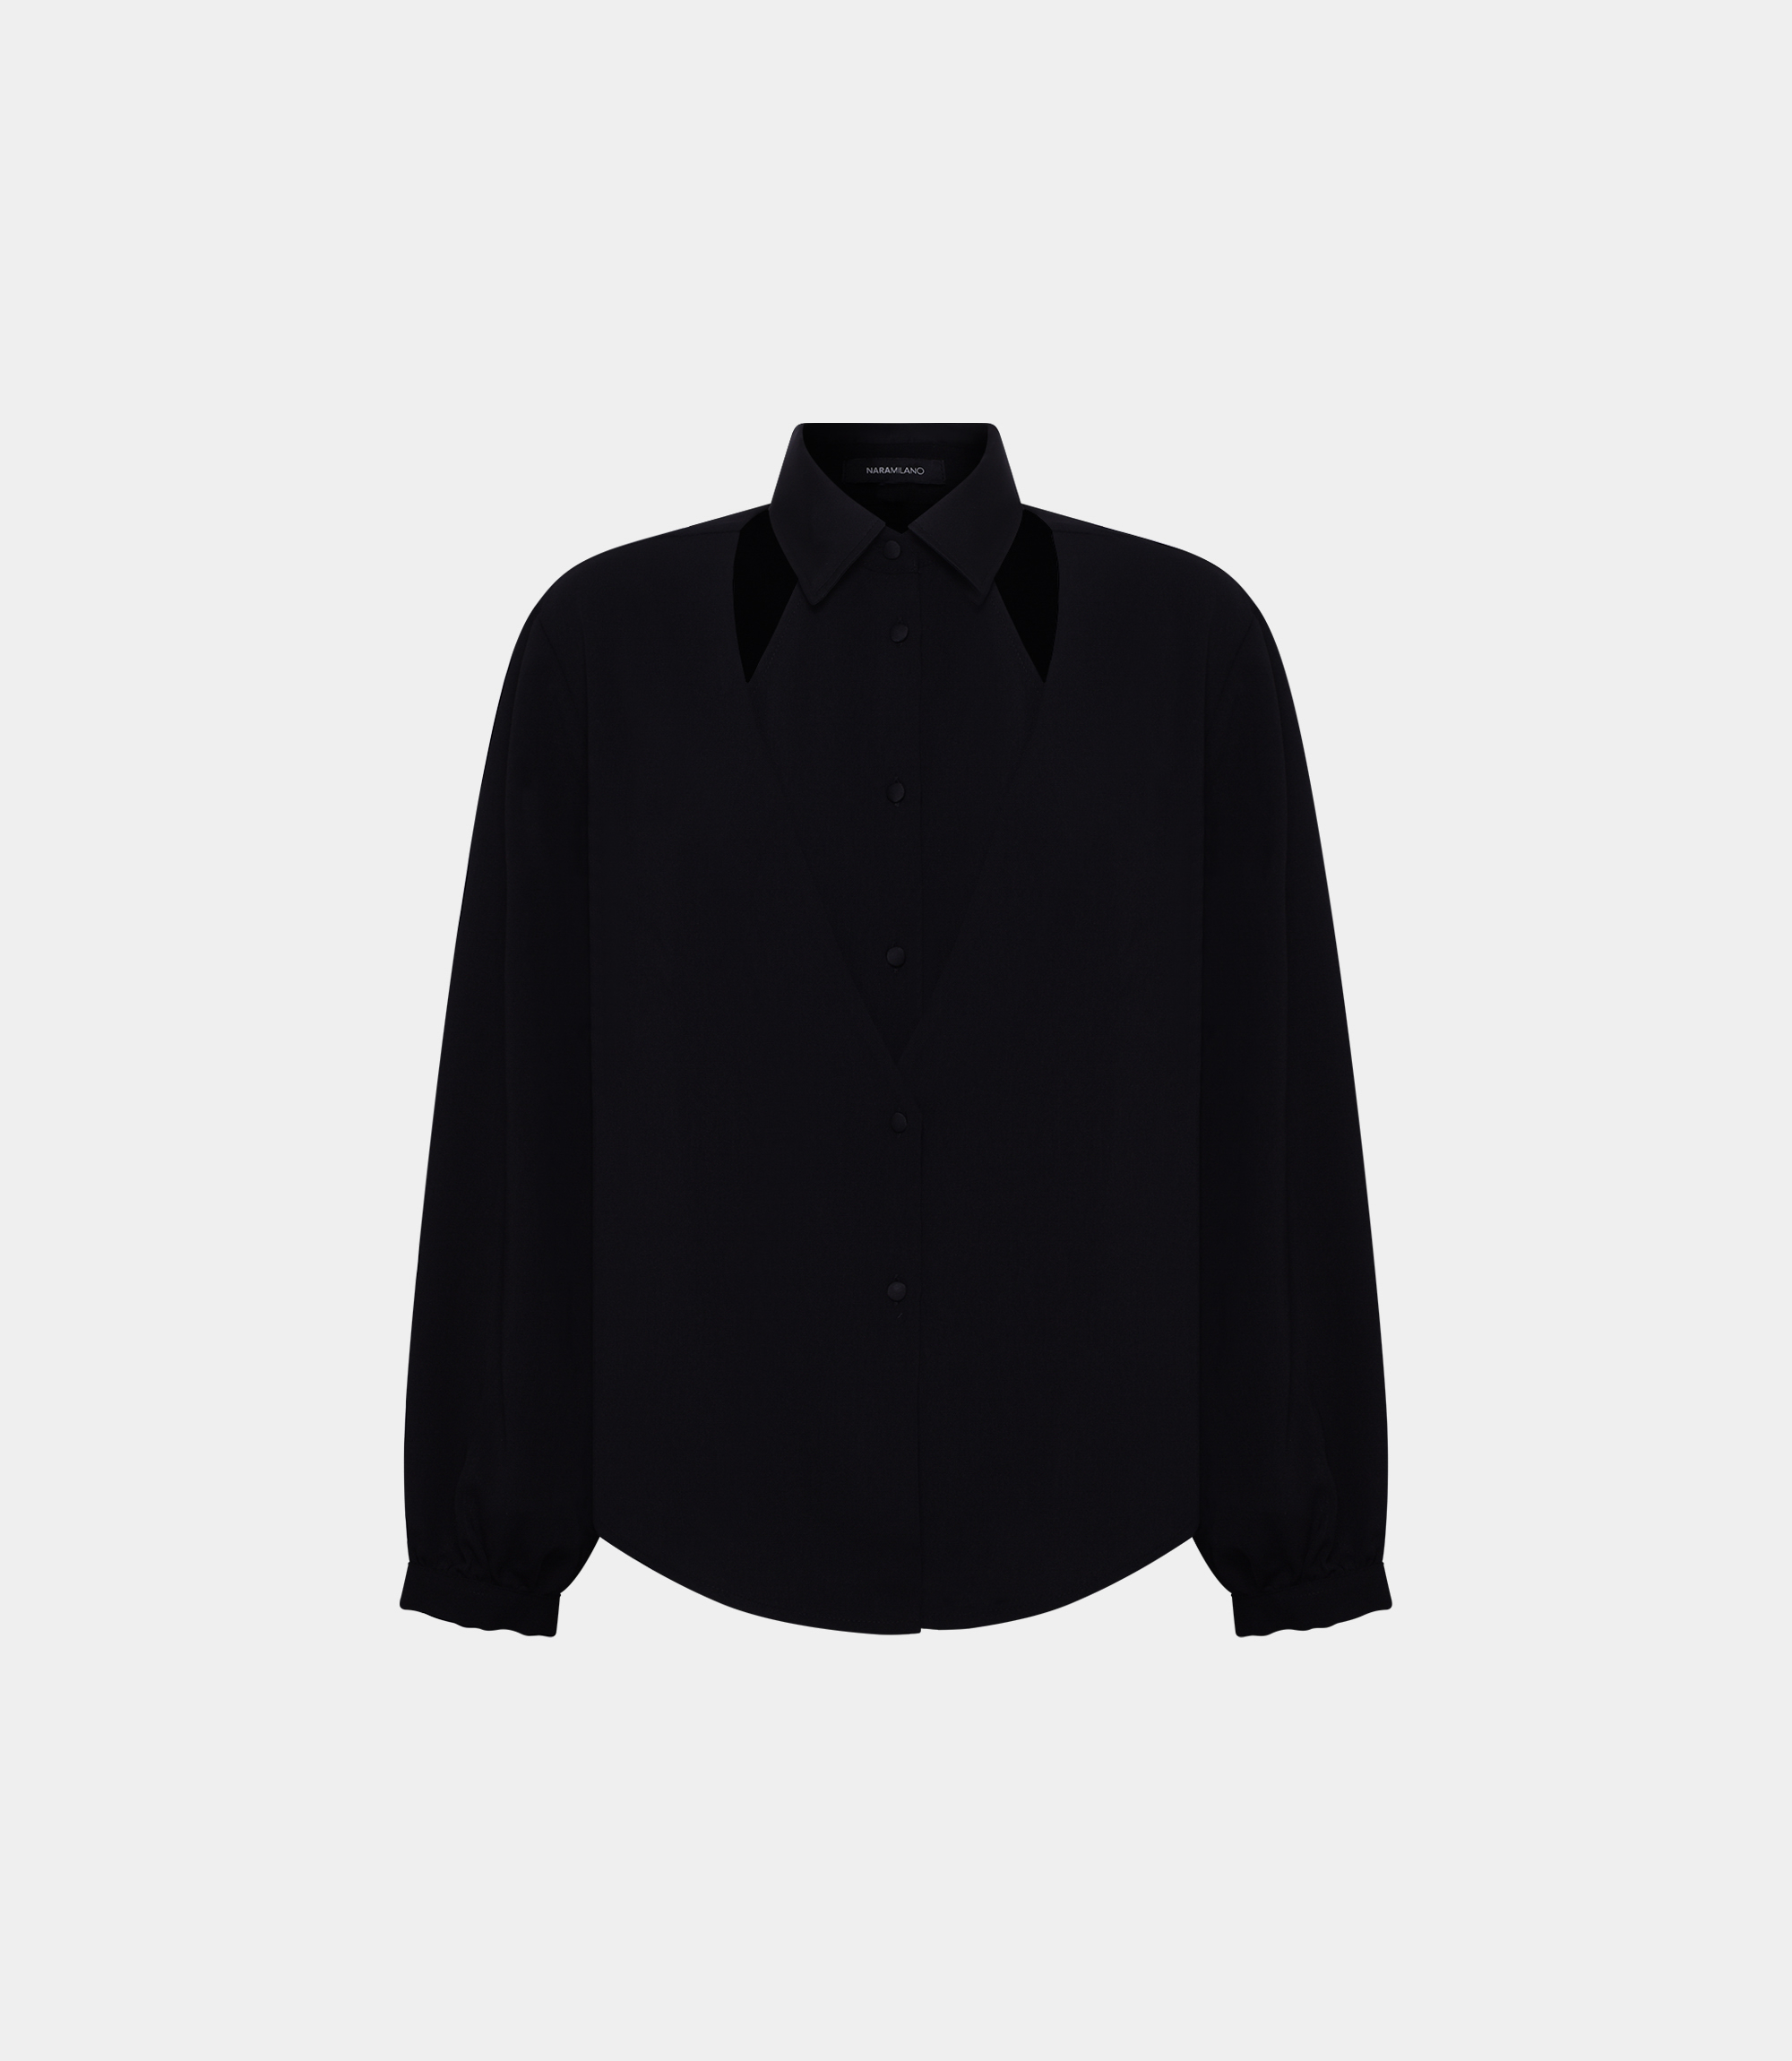 Cardigan shirt with shoulder-high openings - SHIRTS - NaraMilano